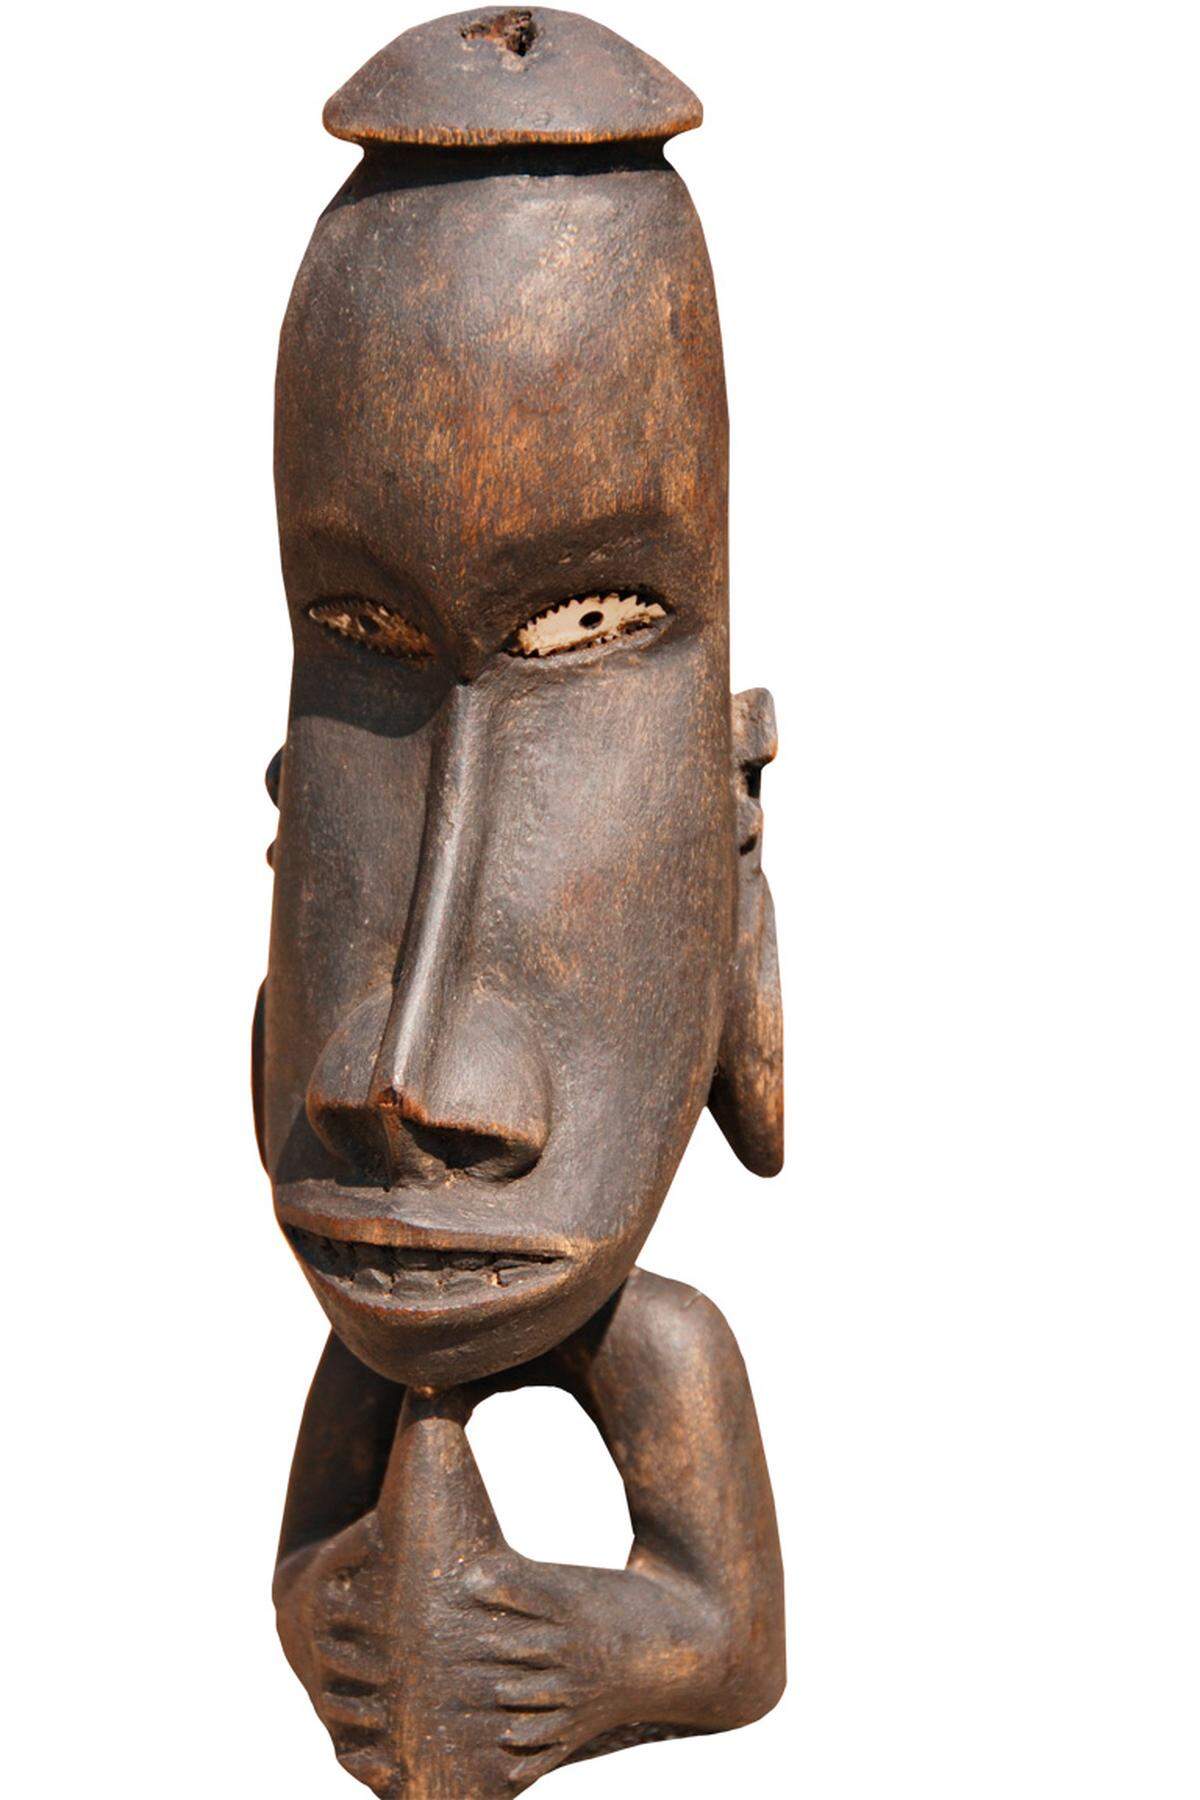 Schöne Mitbringsel: Raymonde Chatelain verkauft in ihrem Geschäft „Ngilong International Tuburin“ Masken, Statuen und Schmuck von den verschiedenen Südseeinseln. So wie diesen Schutzgeist eines Bootes von den Solomon-Inseln.  Promande Roger Laroque, Noumeá. Tel.: + 687 76 3707 4x4avn@lagoon.nc.